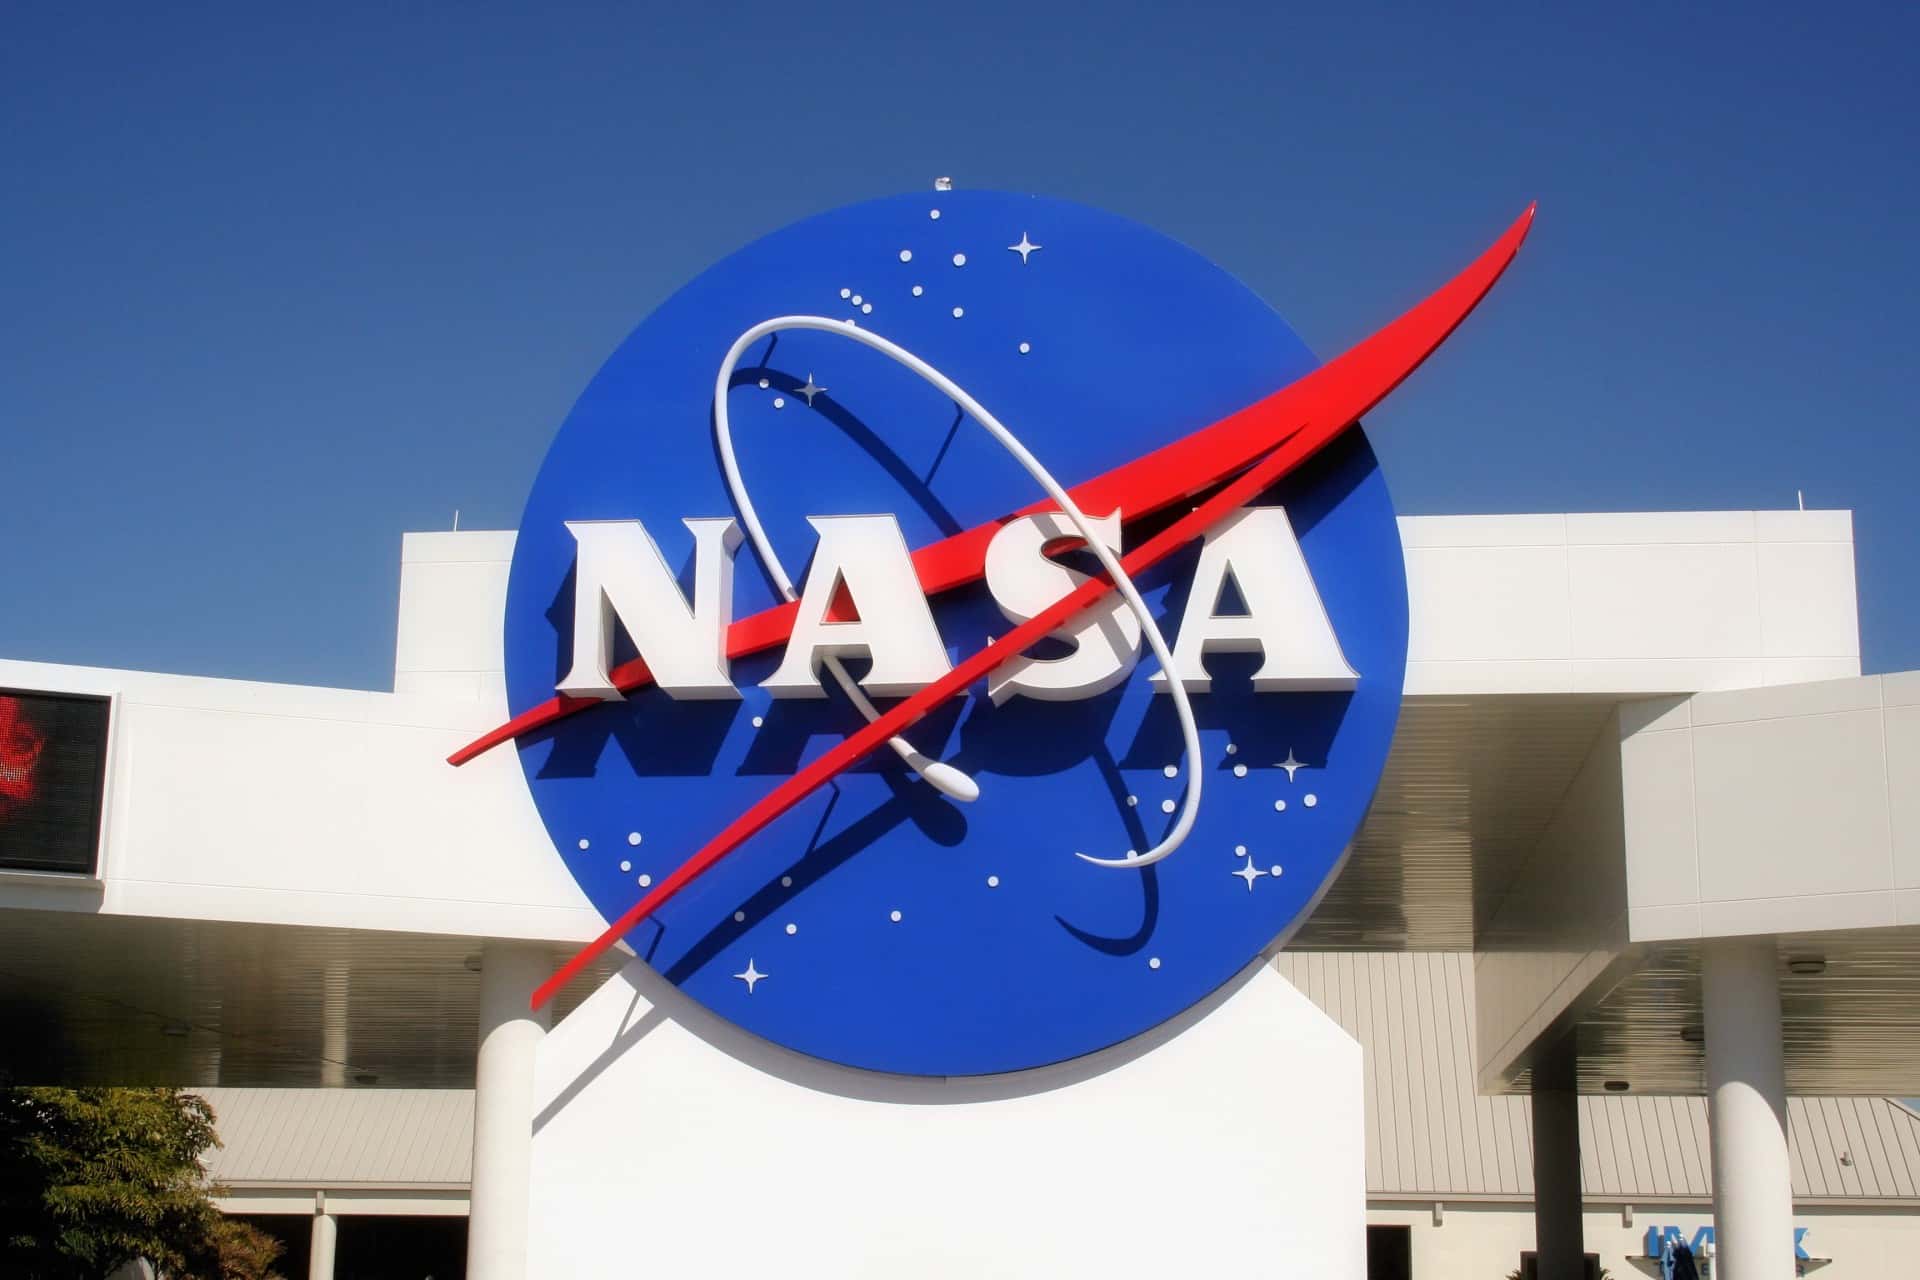 NASA facts